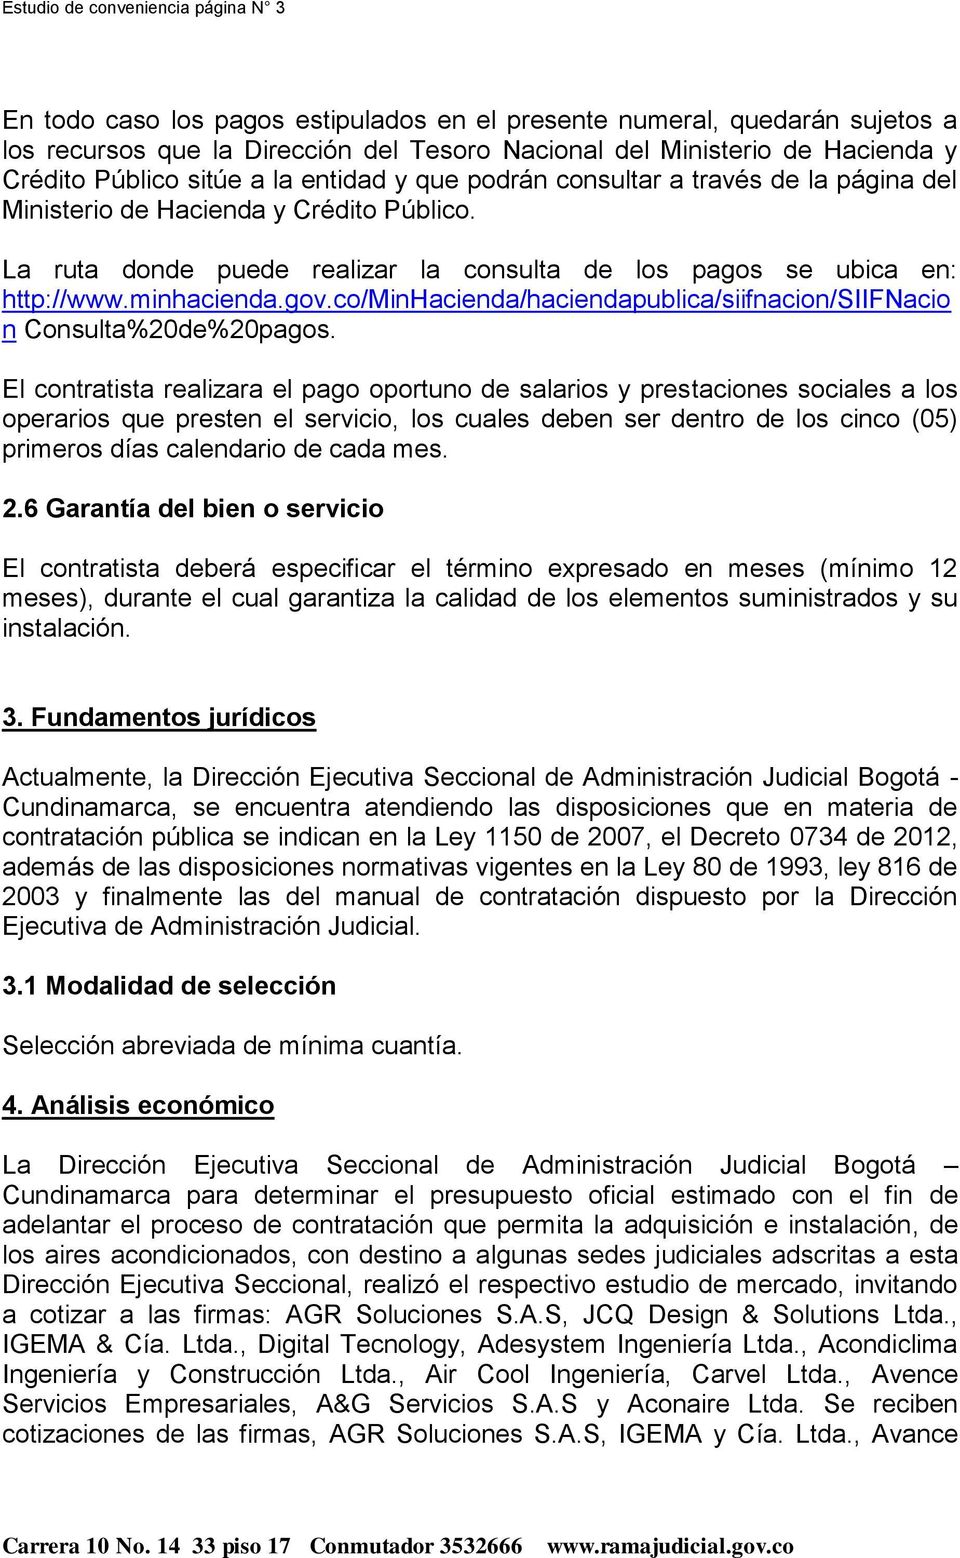 minhacienda.gov.co/minhacienda/haciendapublica/siifnacion/siifnacio n Consulta%20de%20pagos.